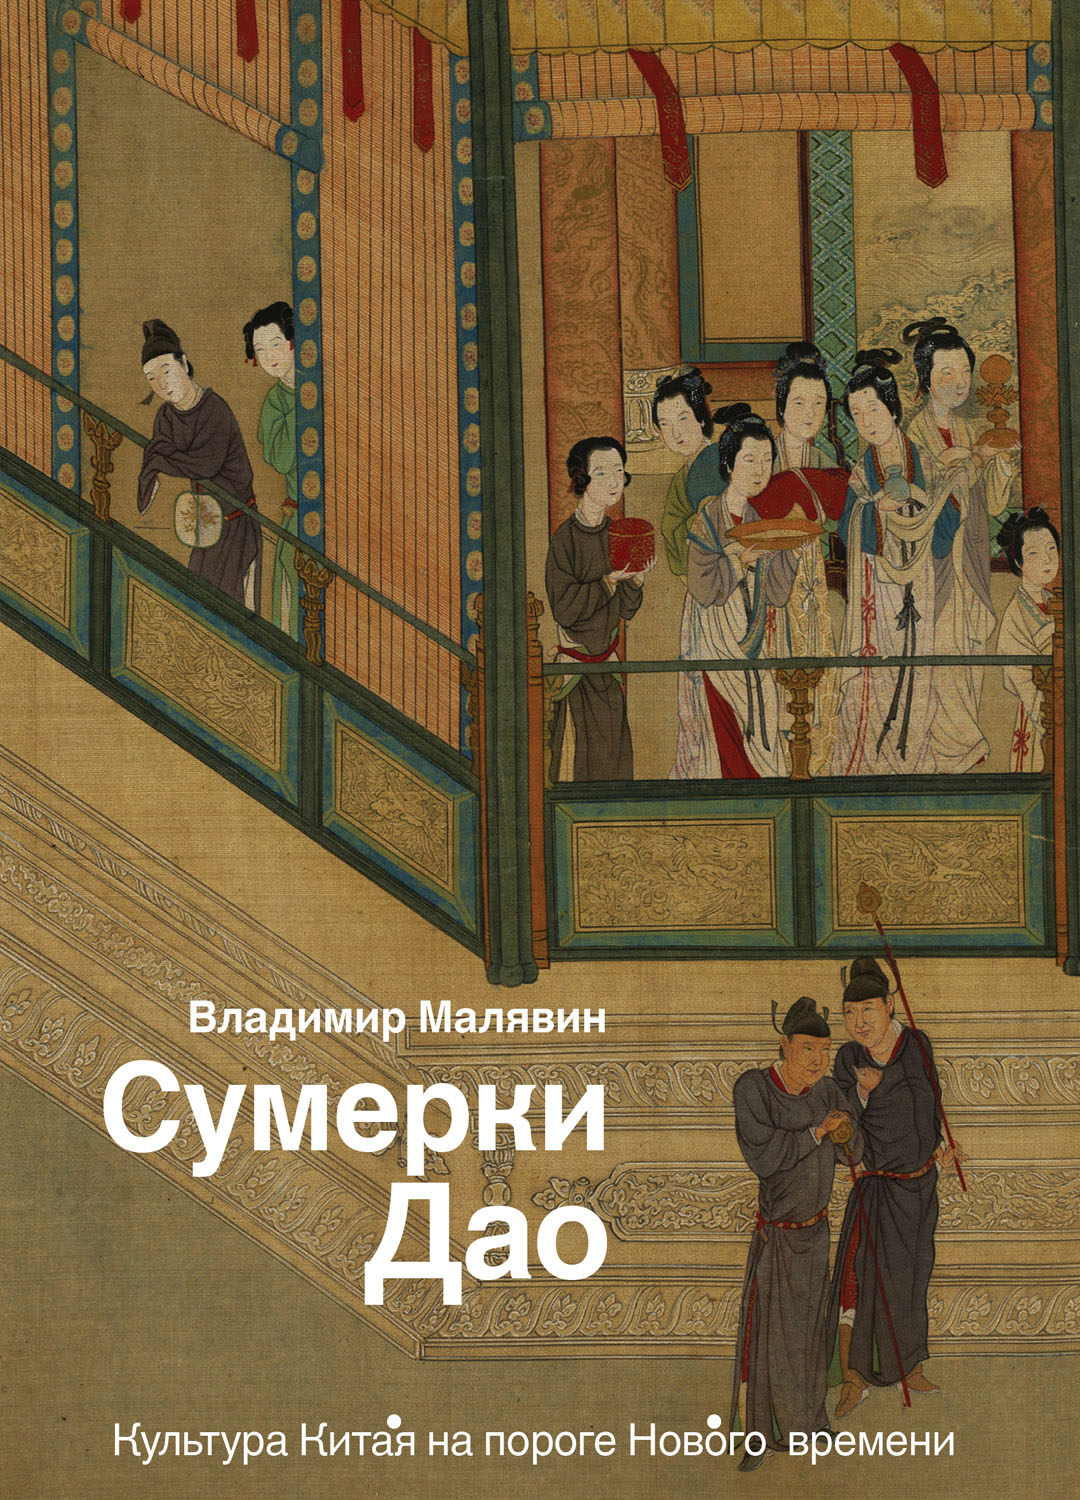 Продажа книги: «Сумерки Дао: Культура Китая на пороге Нового времени» — Владимир Малявин, 2019 г.